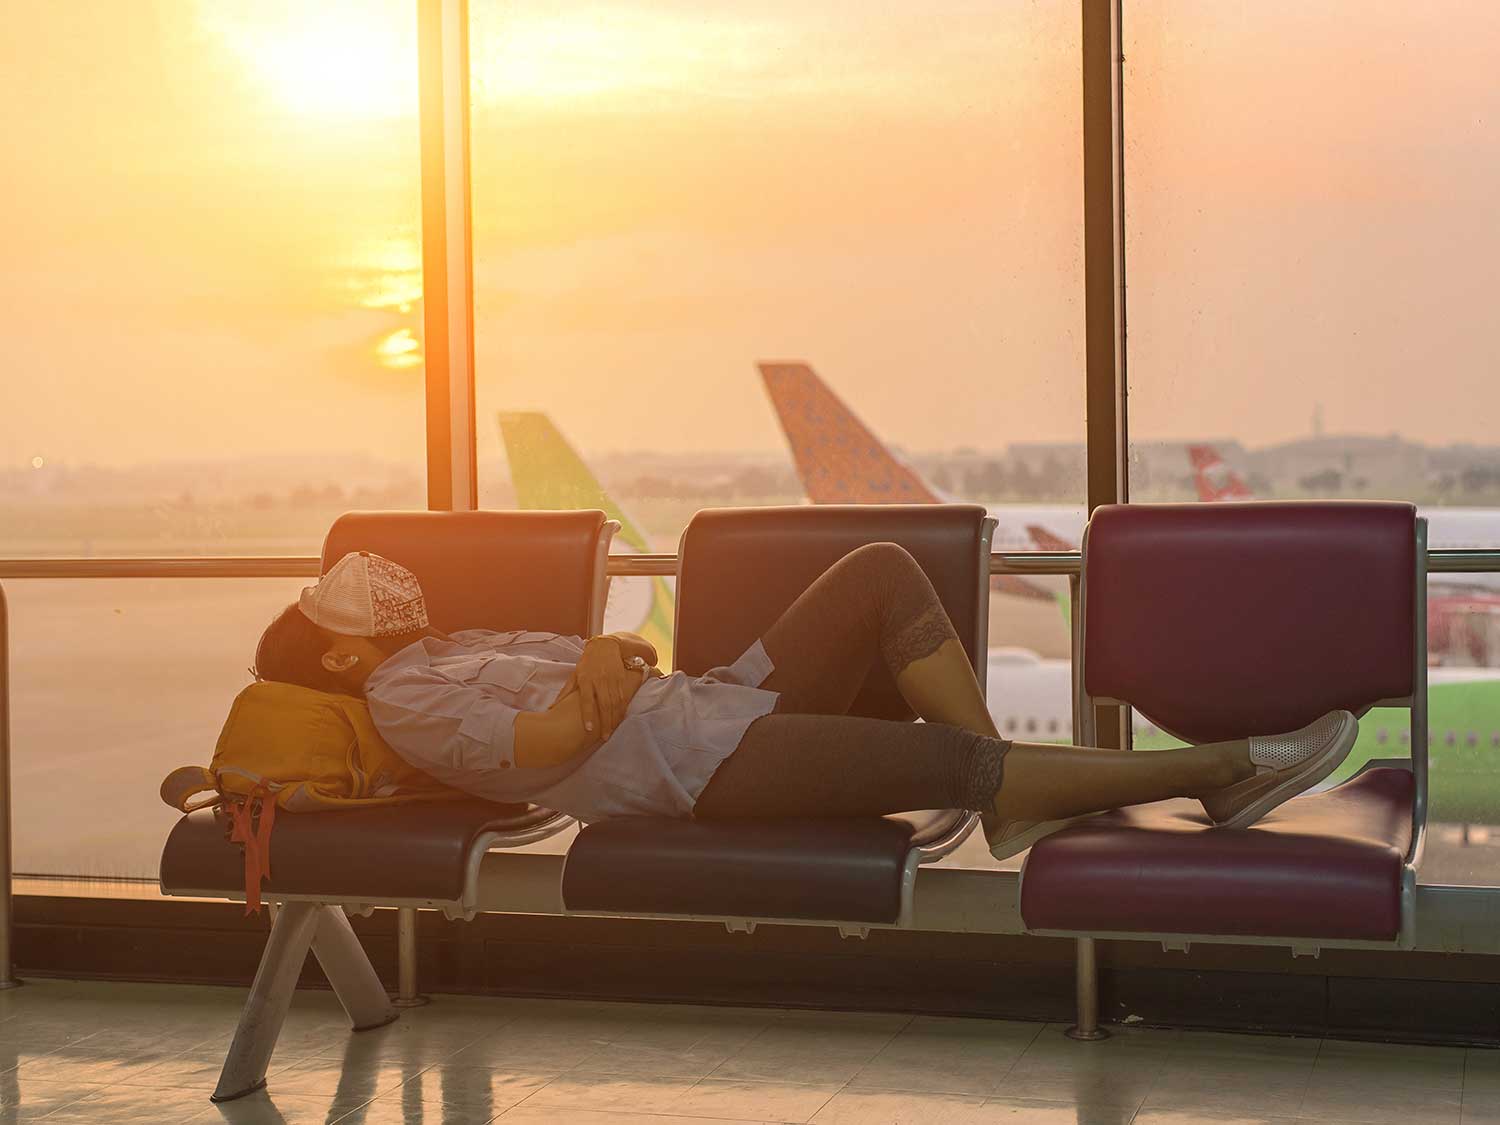 man sleeping at airport